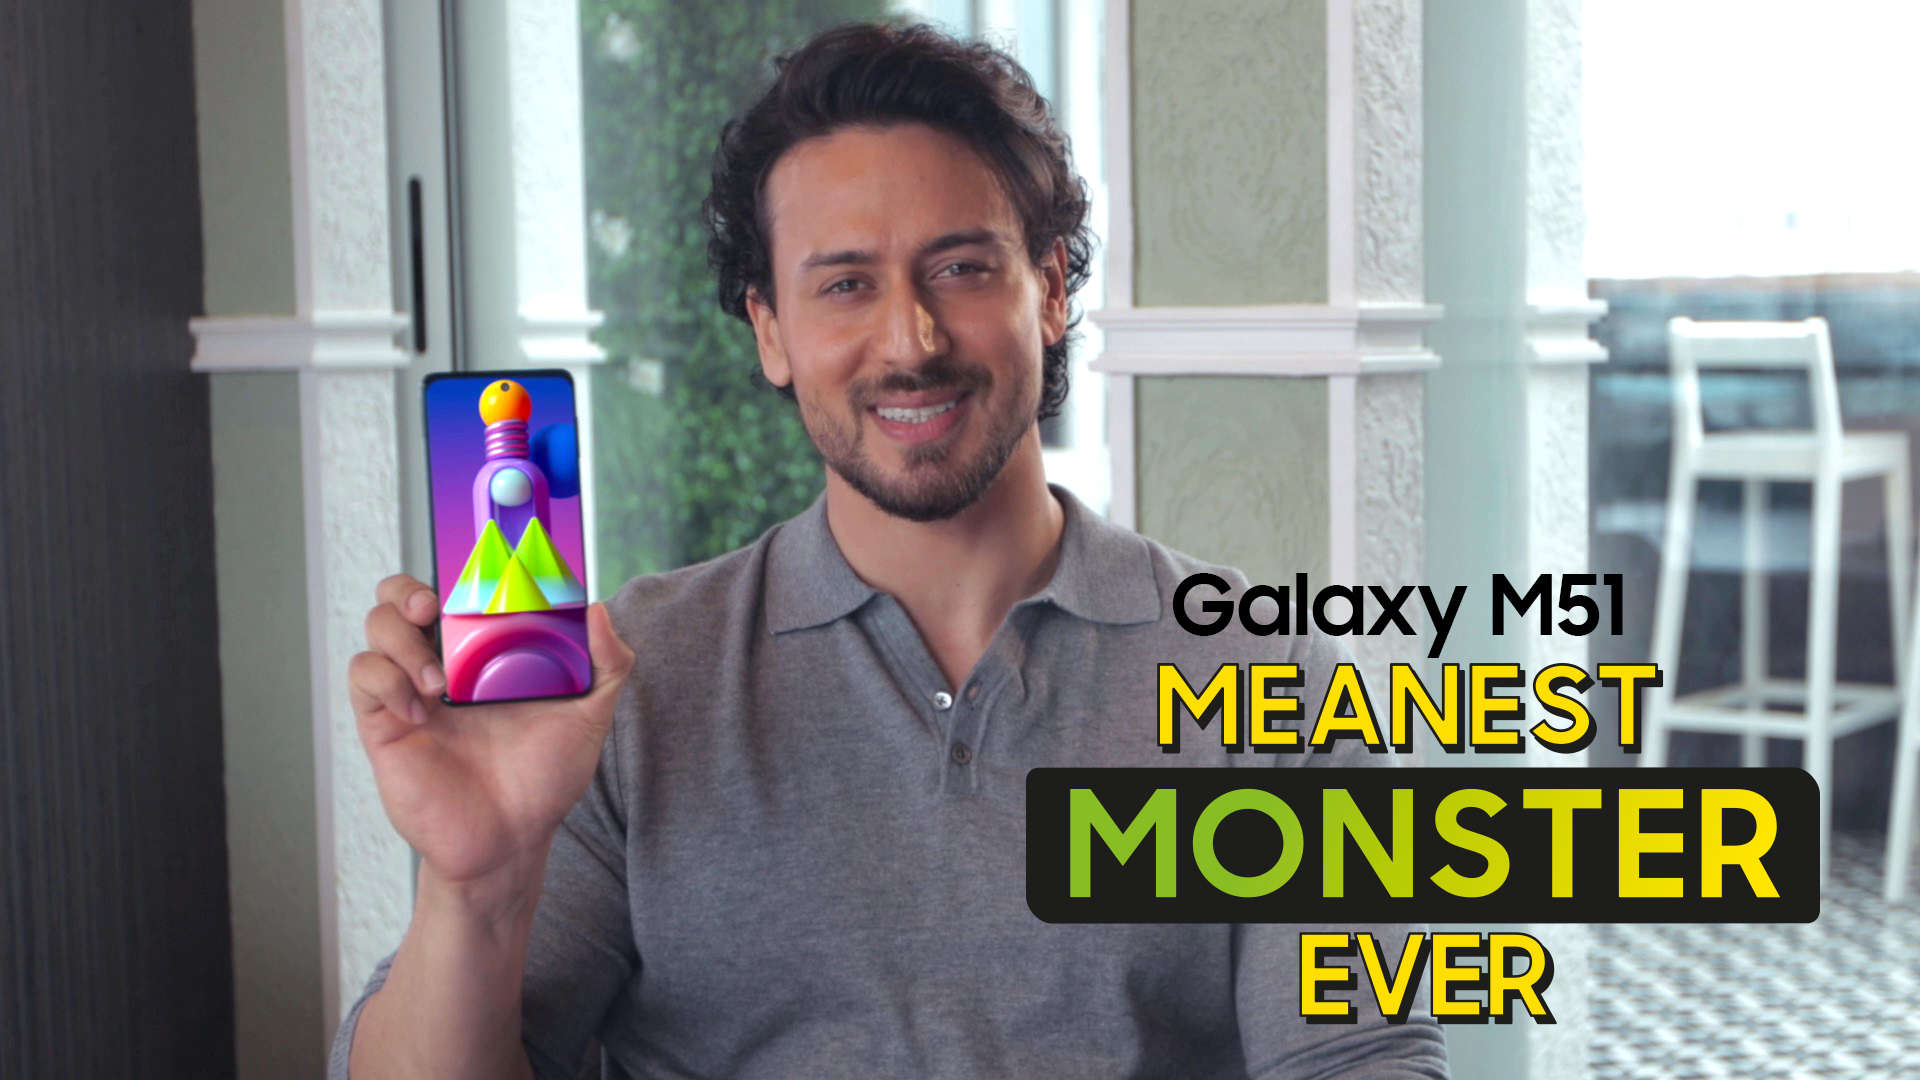 Samsung Galaxy M51 không chỉ có hiệu năng vượt trội, mà còn cung cấp cho bạn hình nền Full HD+ đầy phóng khoáng. Bạn có thể tải về miễn phí ngay từ hôm nay và trang trí cho điện thoại của mình trở nên ấn tượng hơn bao giờ hết!